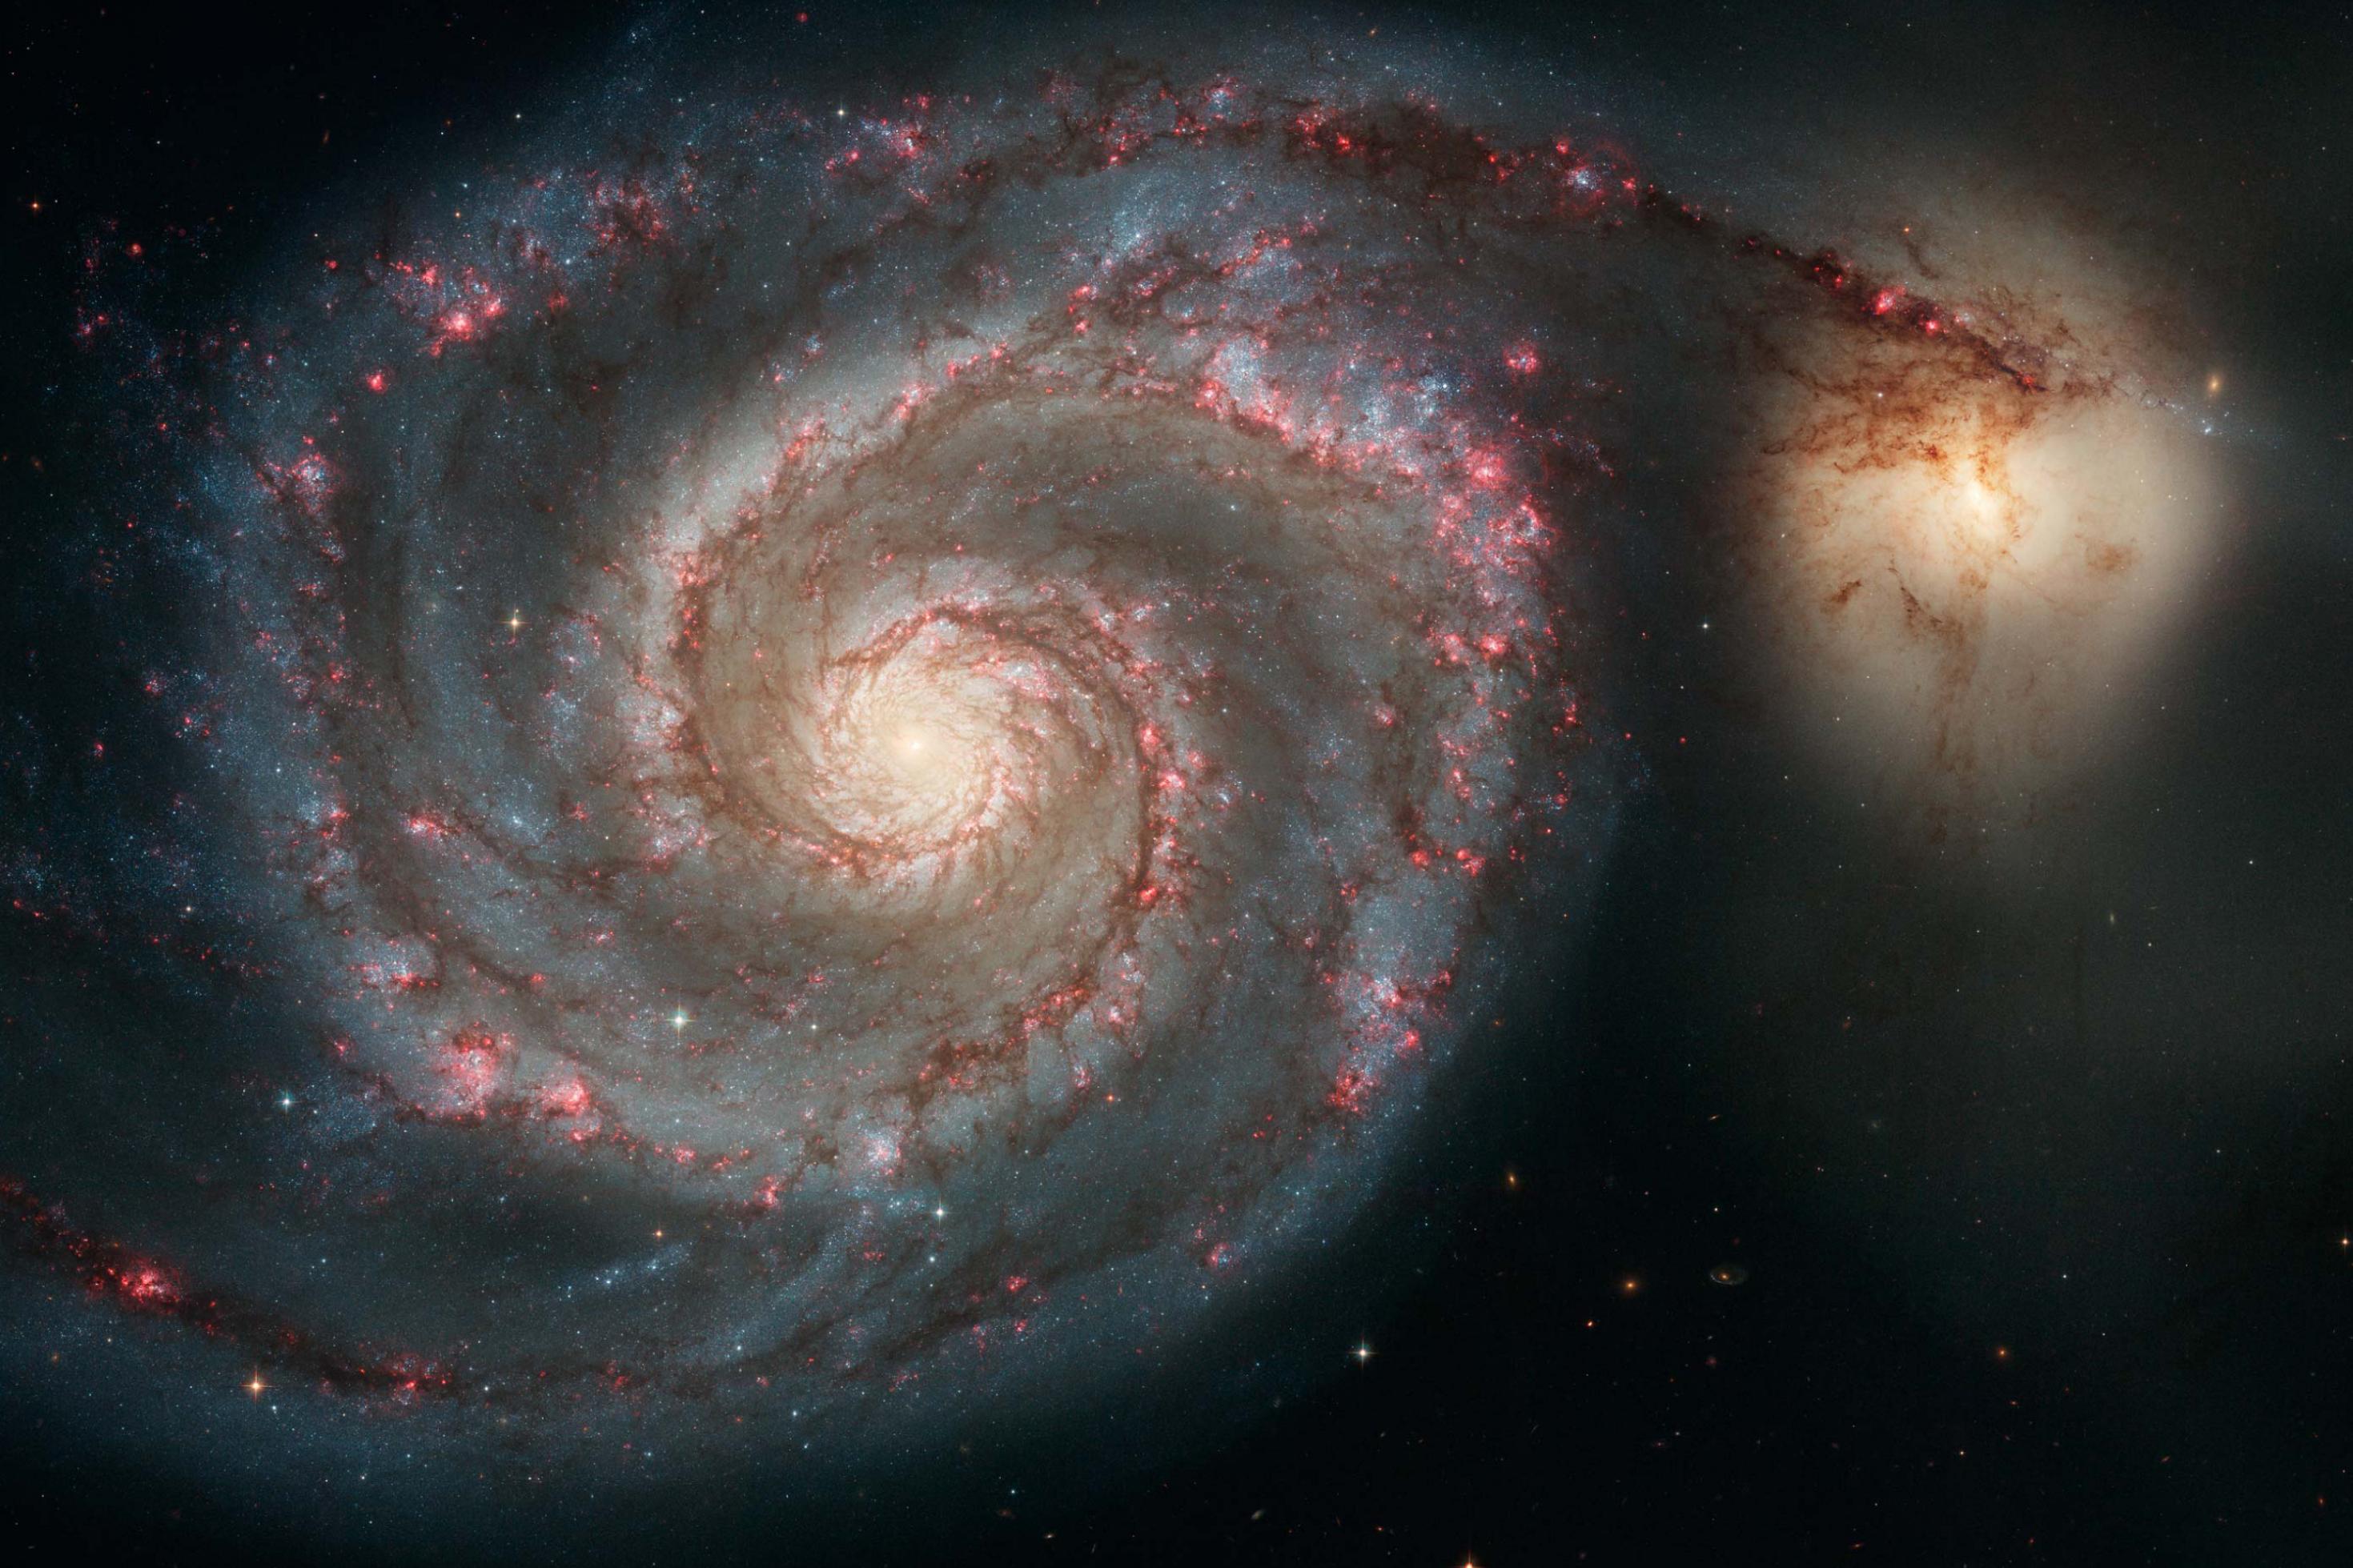 Diese Aufnahme des Hubble Space Telescope ziegt die sogenannte Whirlpool -Galaxie M51 in voller Pracht. Ein Spiralarm scheint zu einer kleineren, unregelmäßigen Nachbargalaxie, NGC 5195 überzulaufen.